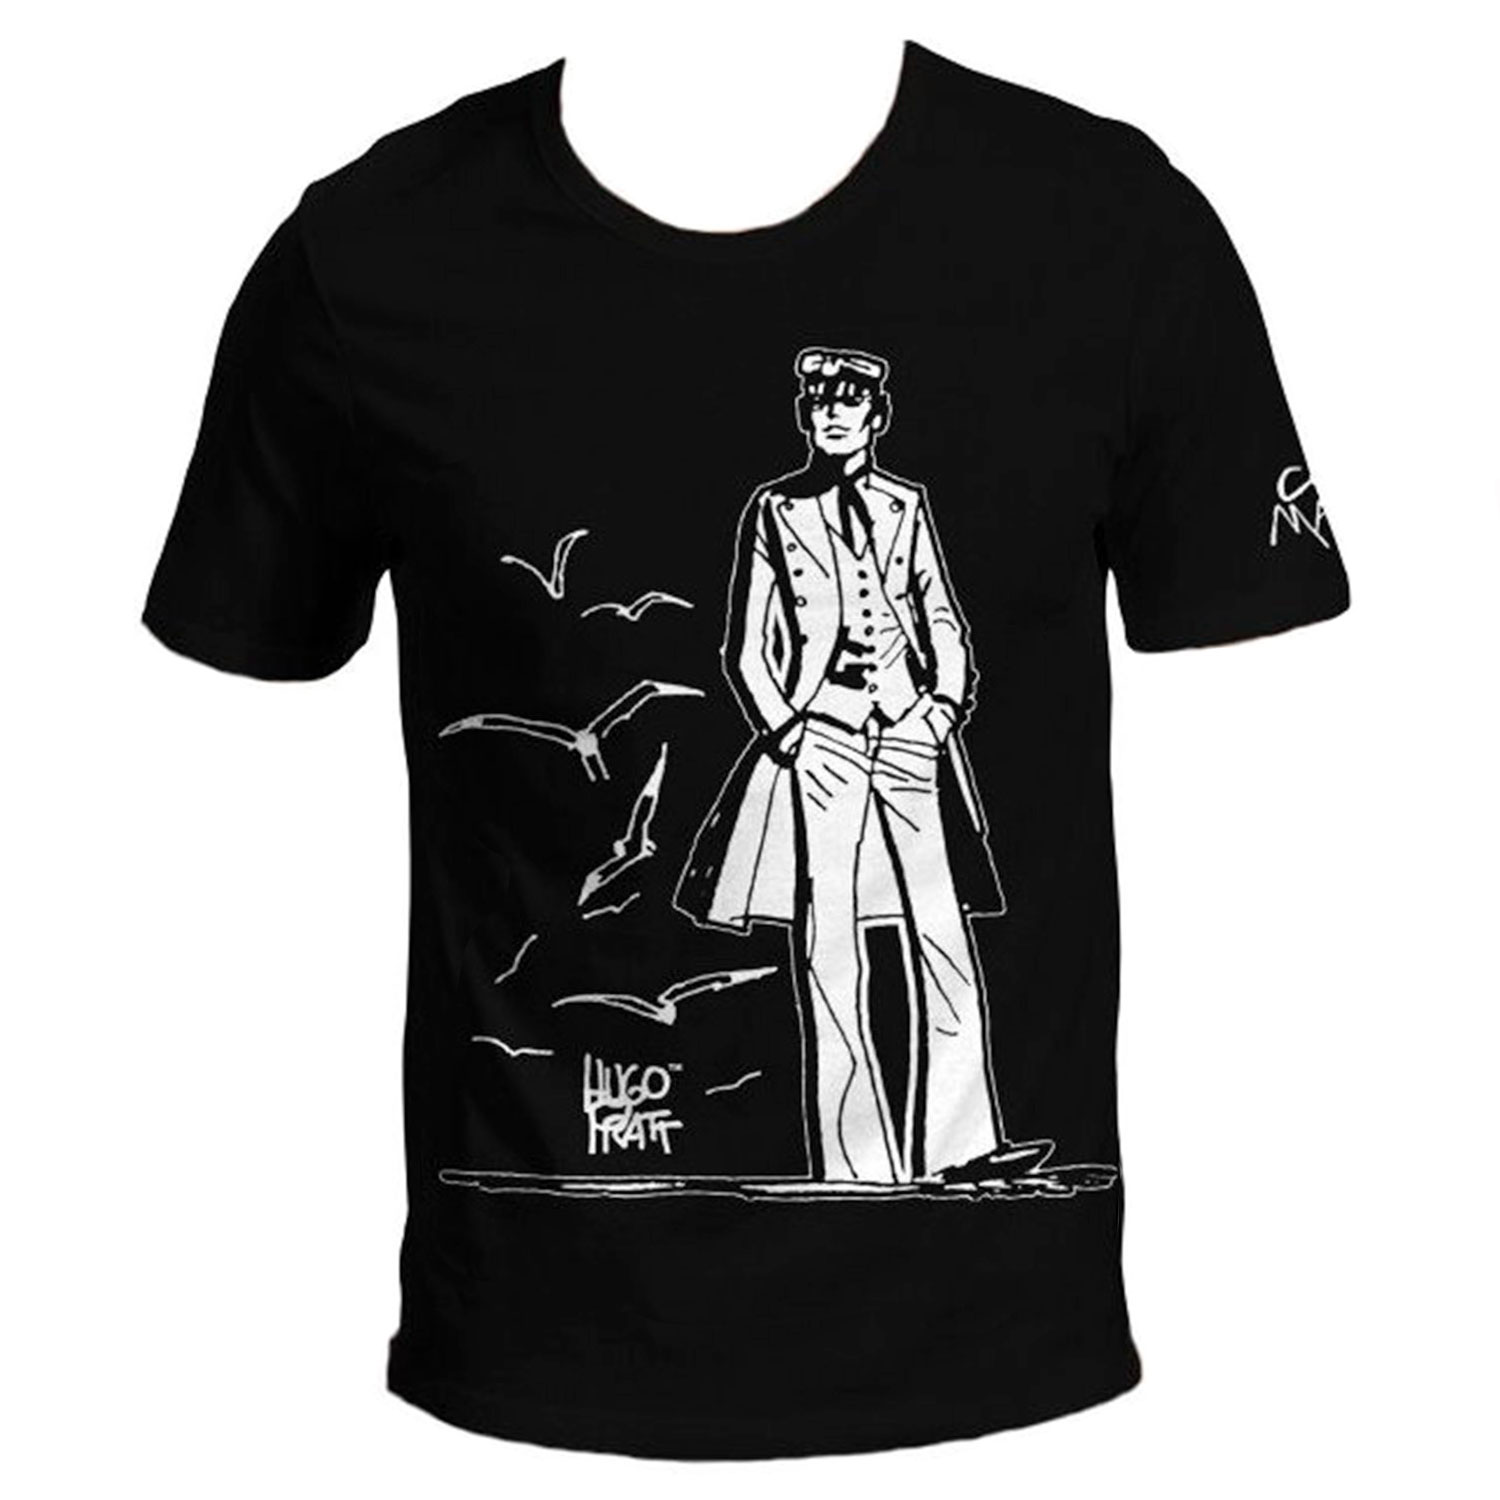 T-shirt Hugo Pratt : Corto Maltese , 40 anni ! - Nero - Taglia XL